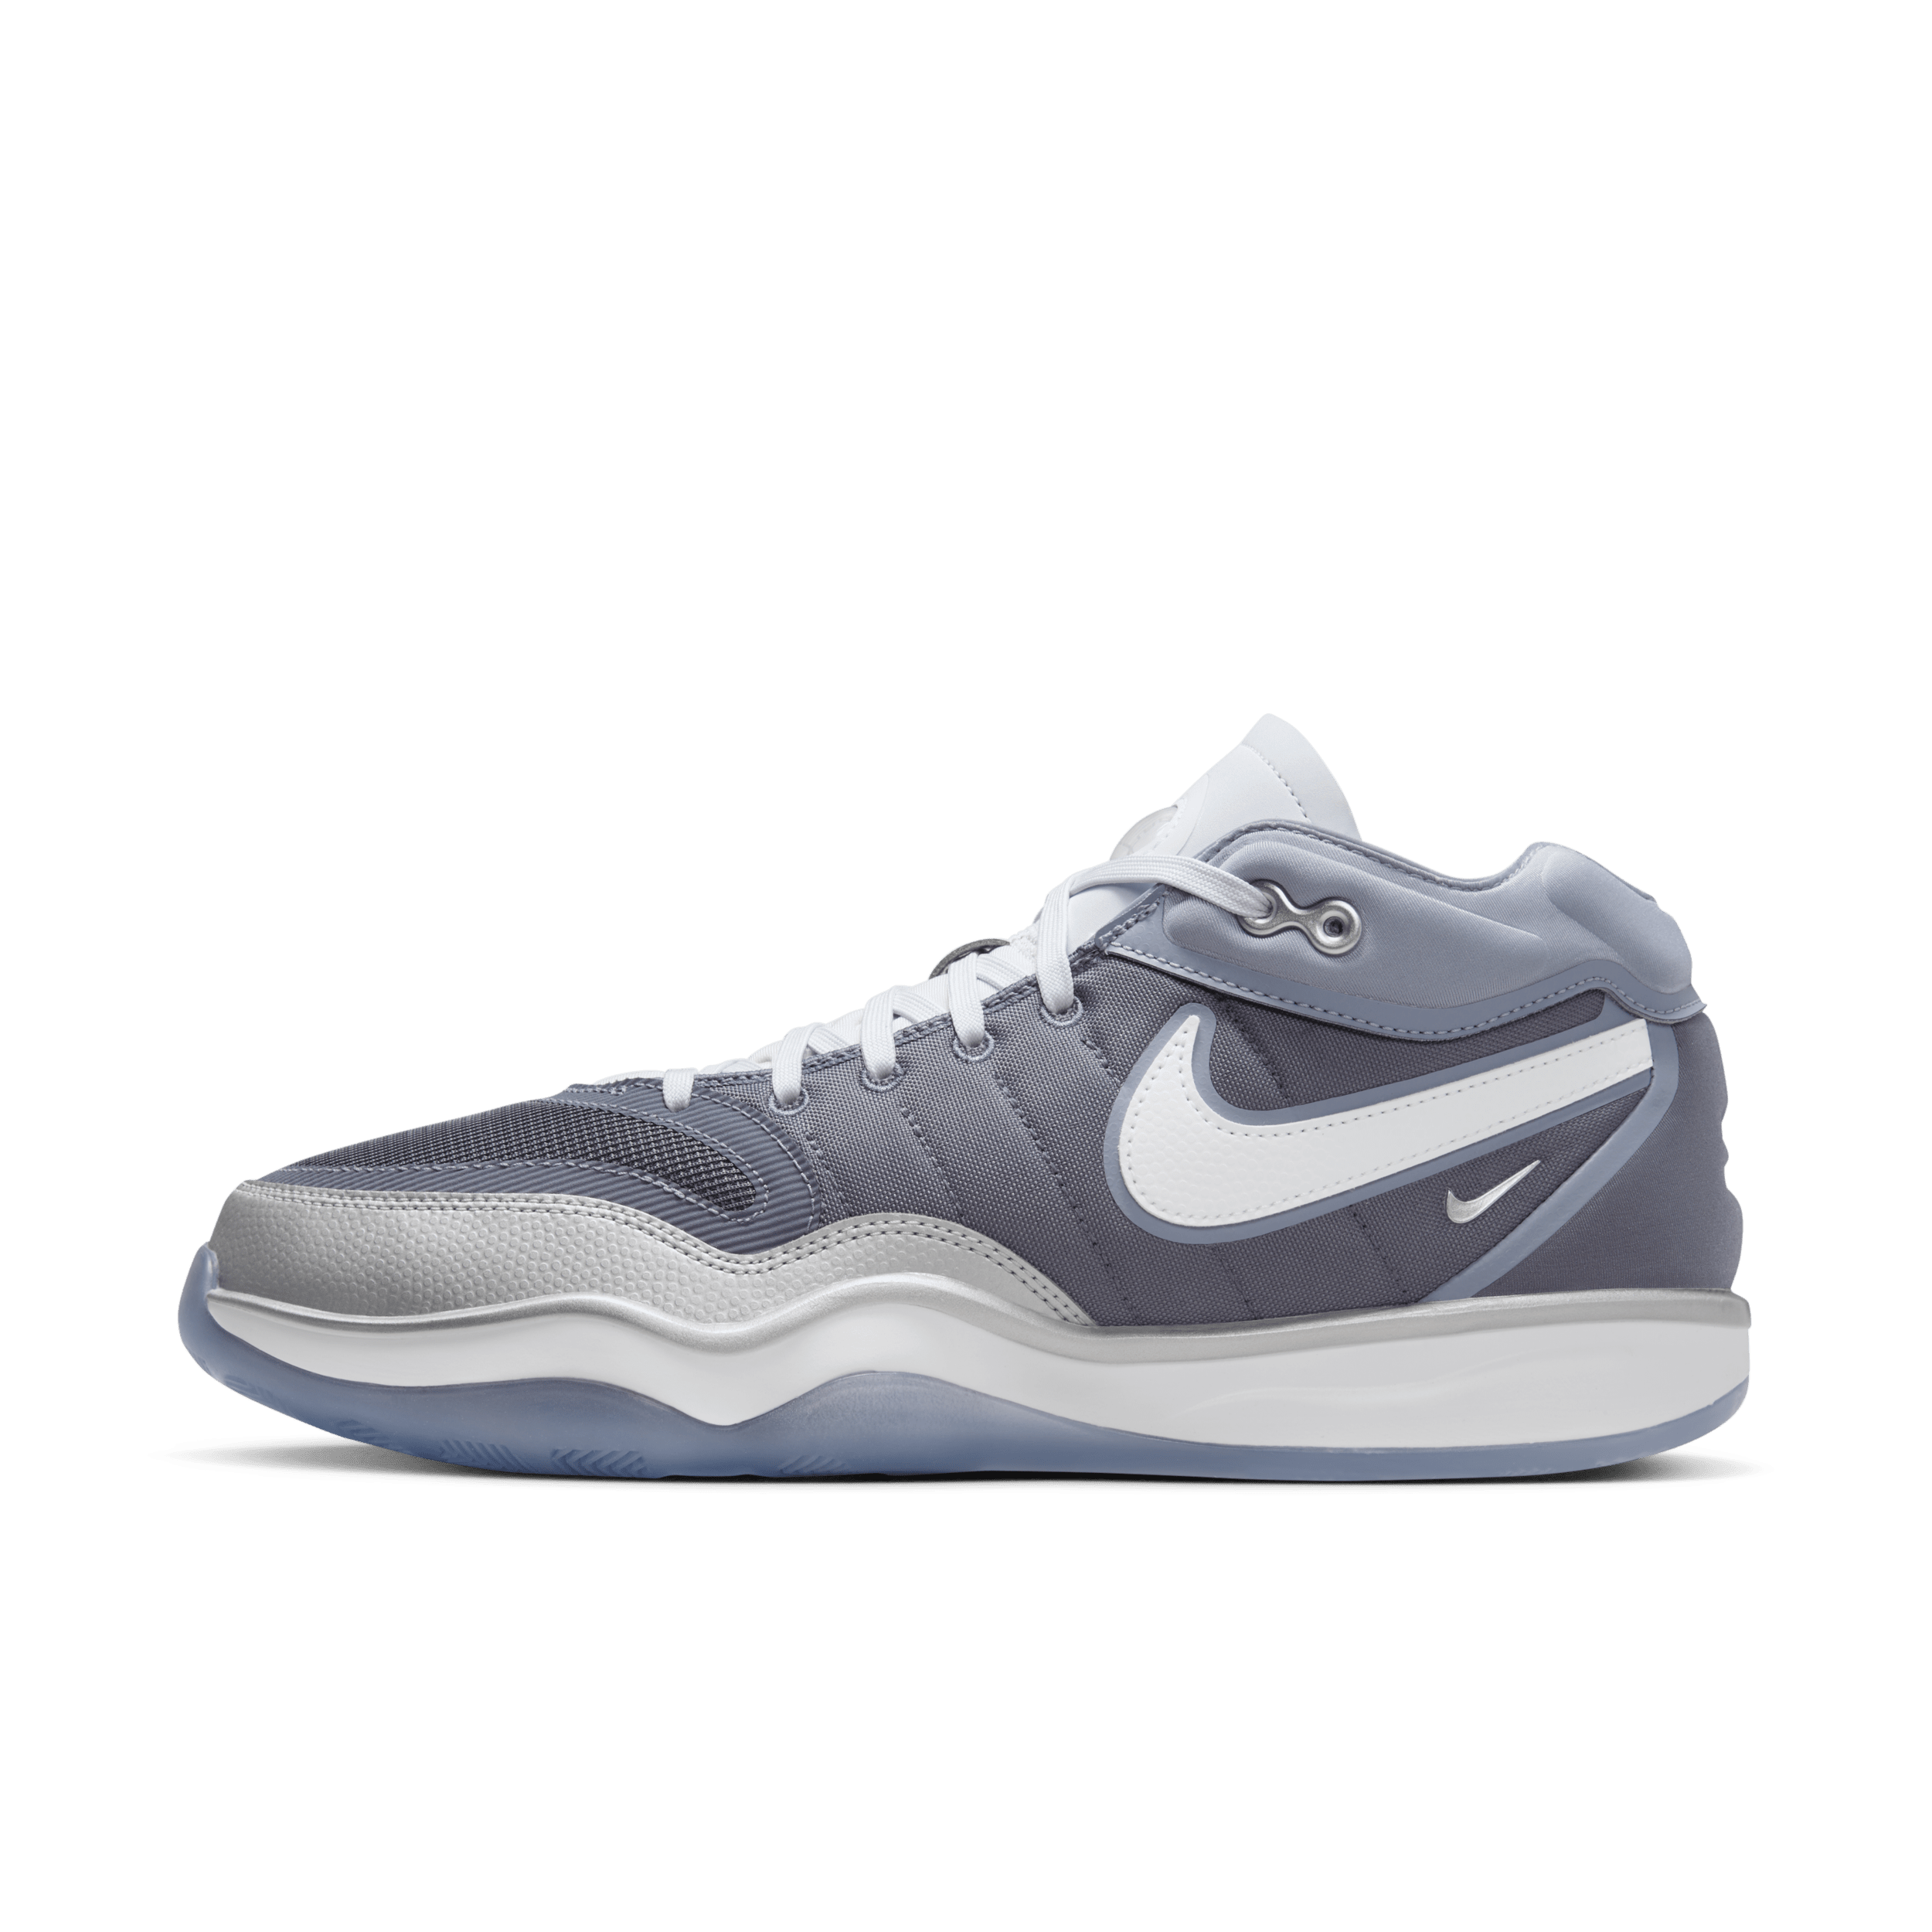 Nike G.T. Hustle 2 basketbalschoenen - Grijs